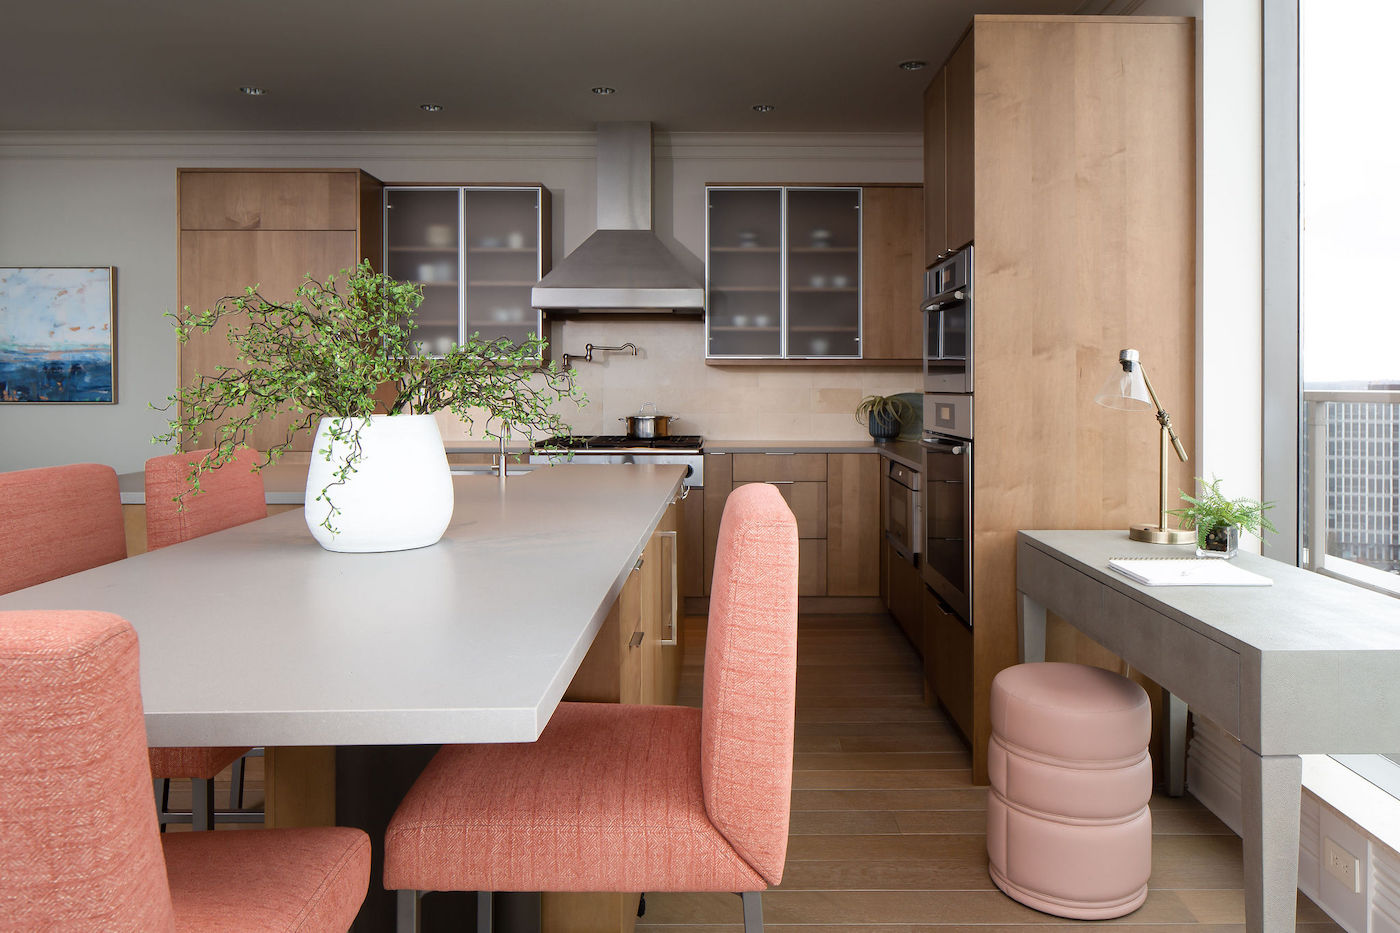 kitchen-interior-design-bellevue-ny-michelle-yorke